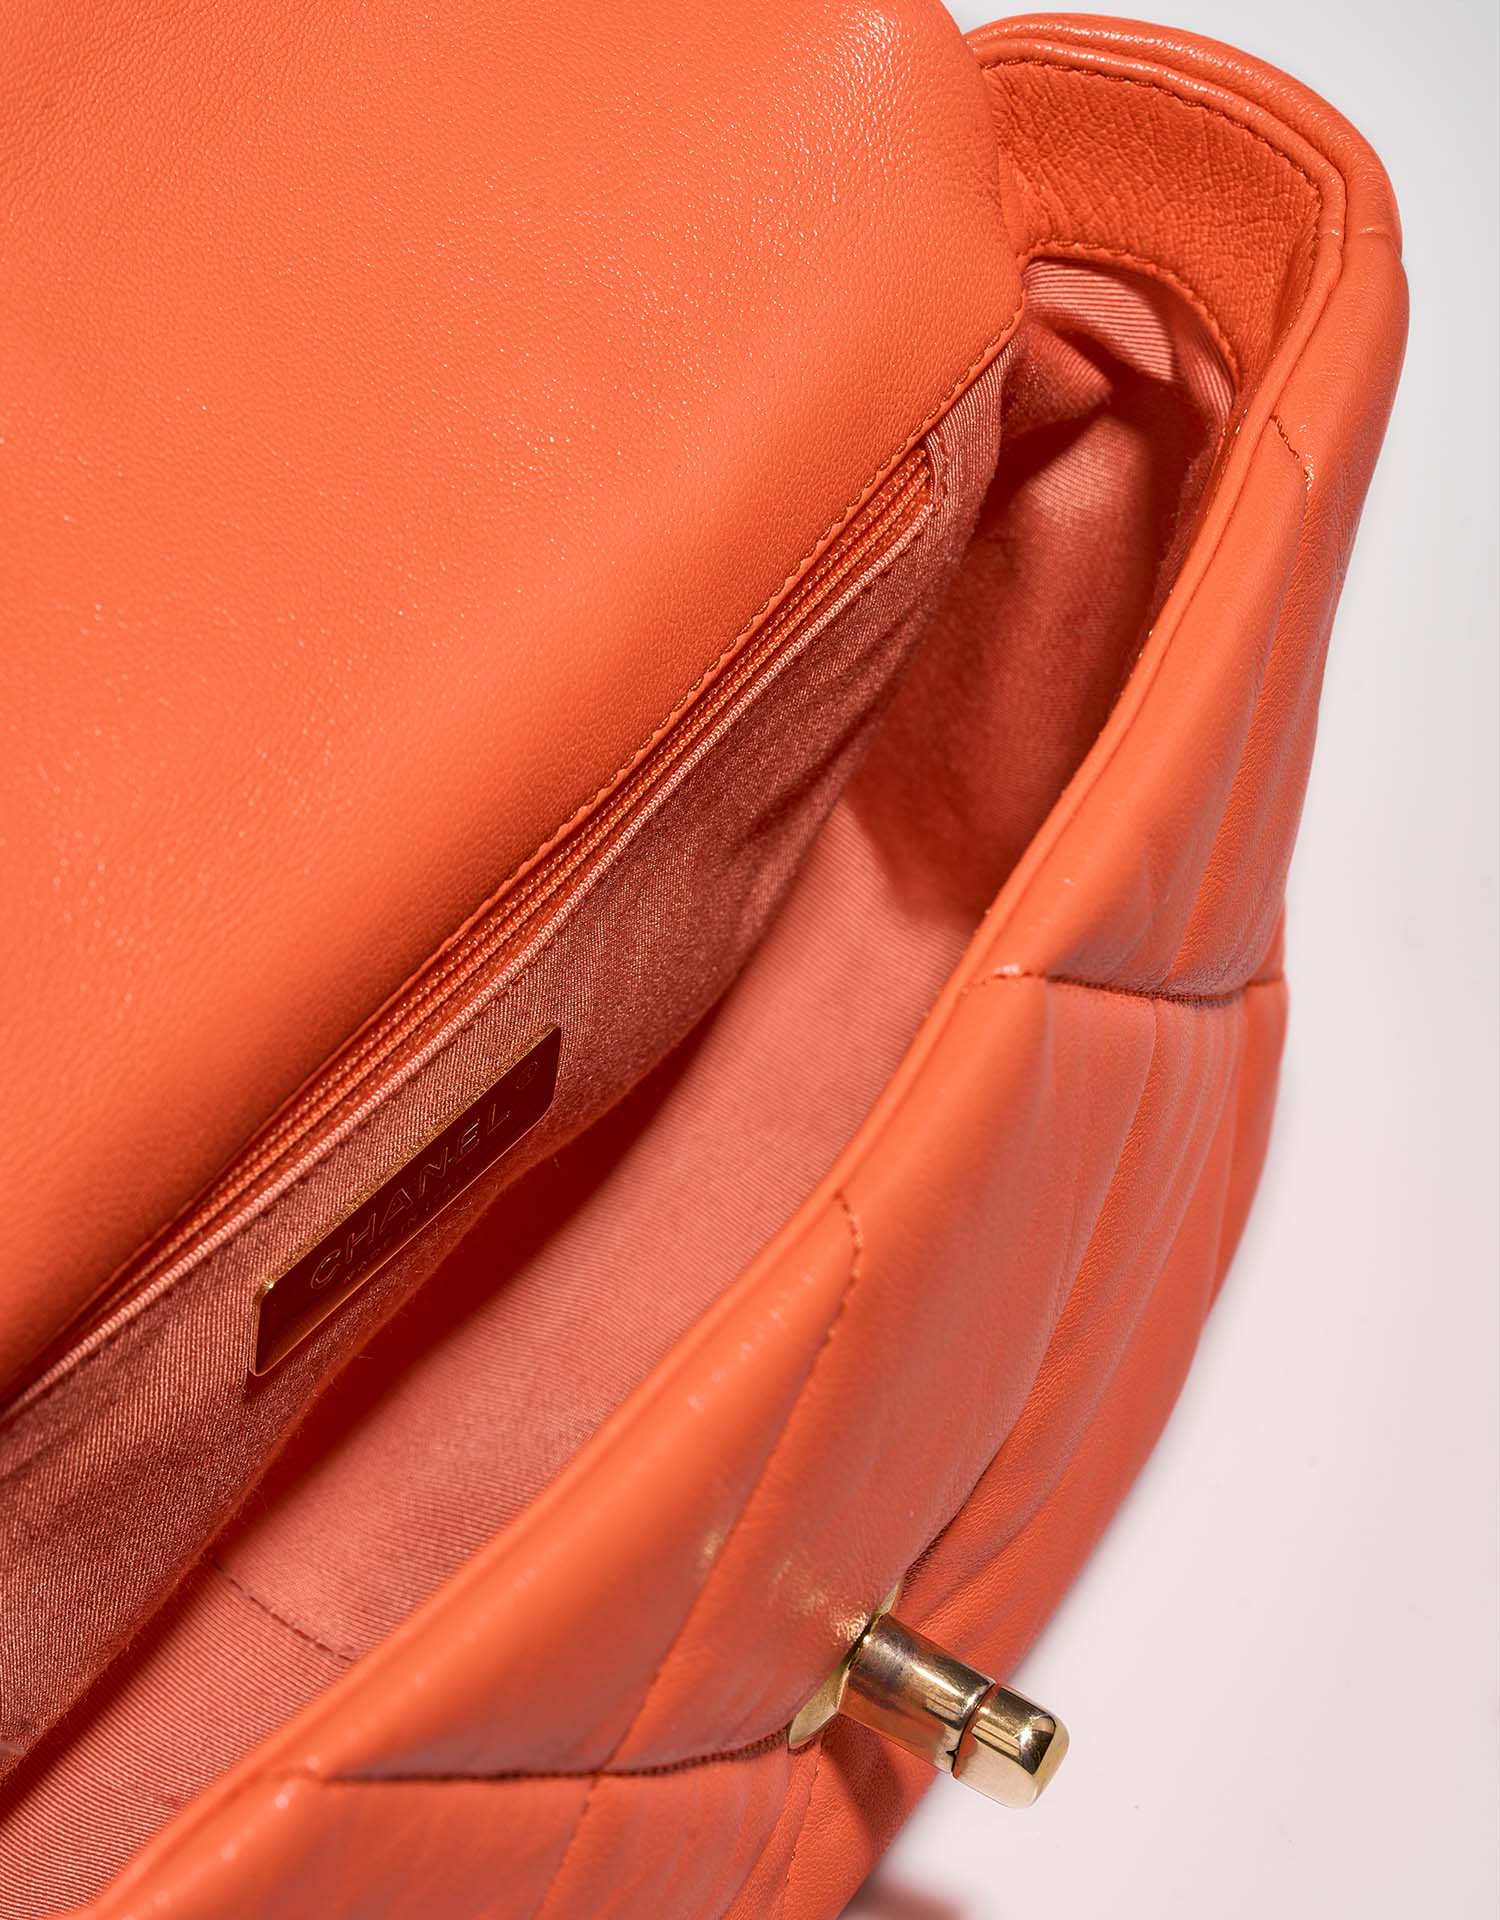 Chanel 19 FlapBag Orange Inside  | Sell your designer bag on Saclab.com